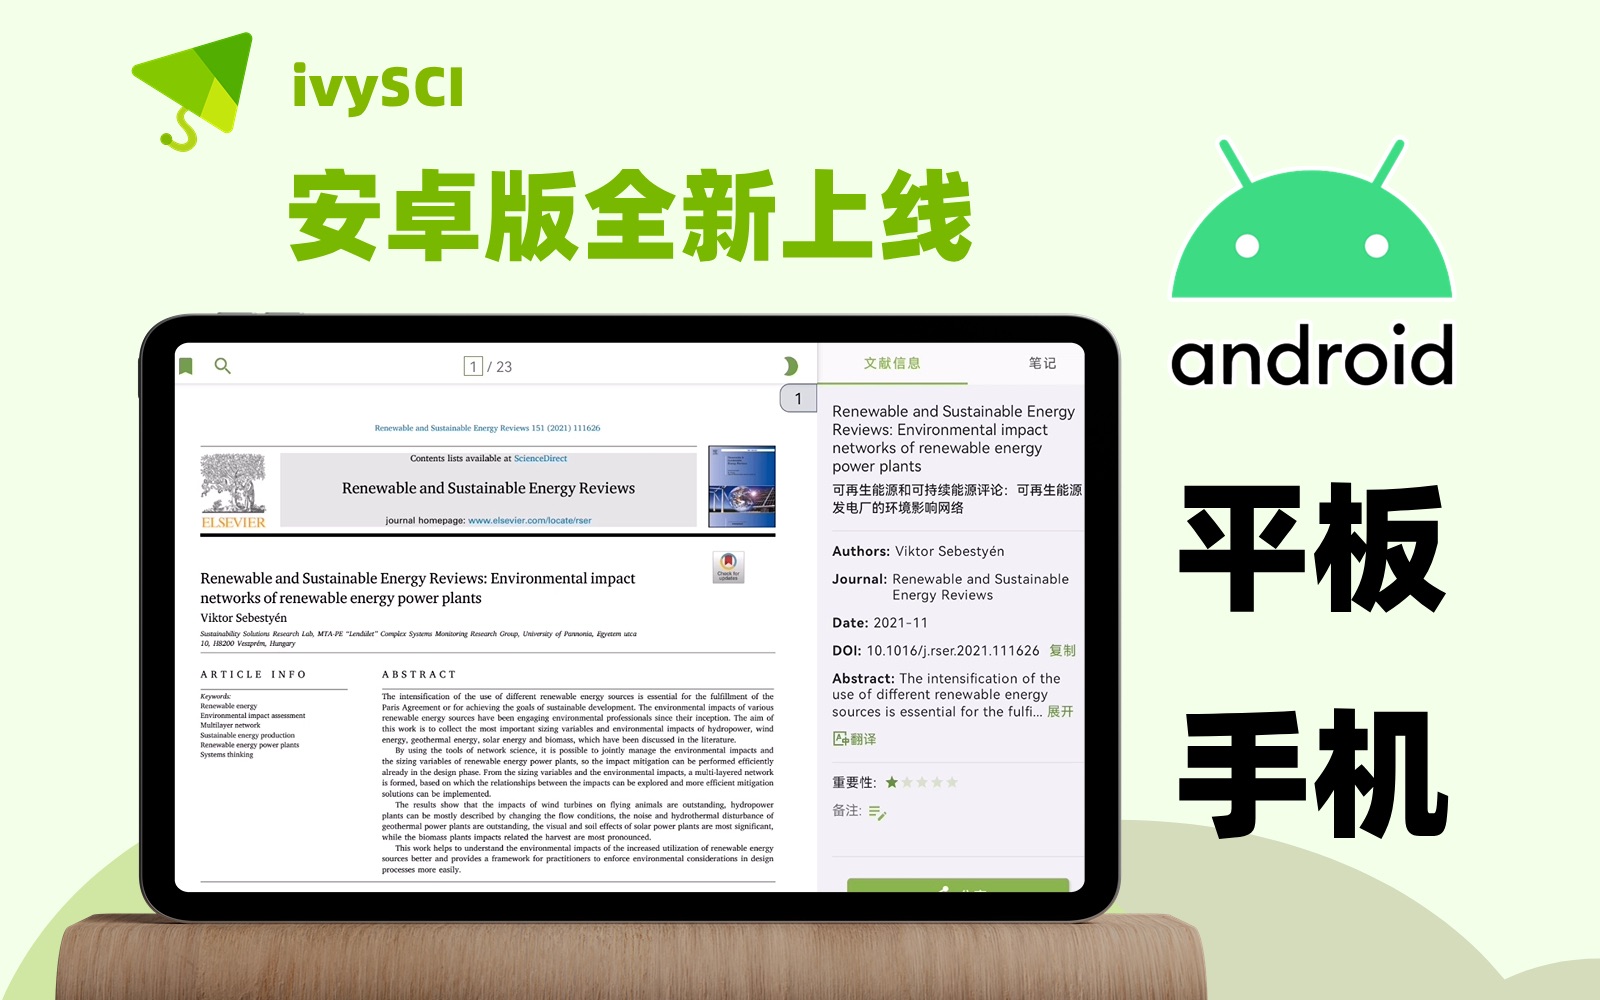 适合安卓手机和平板的文献阅读器ivySCI全新上线